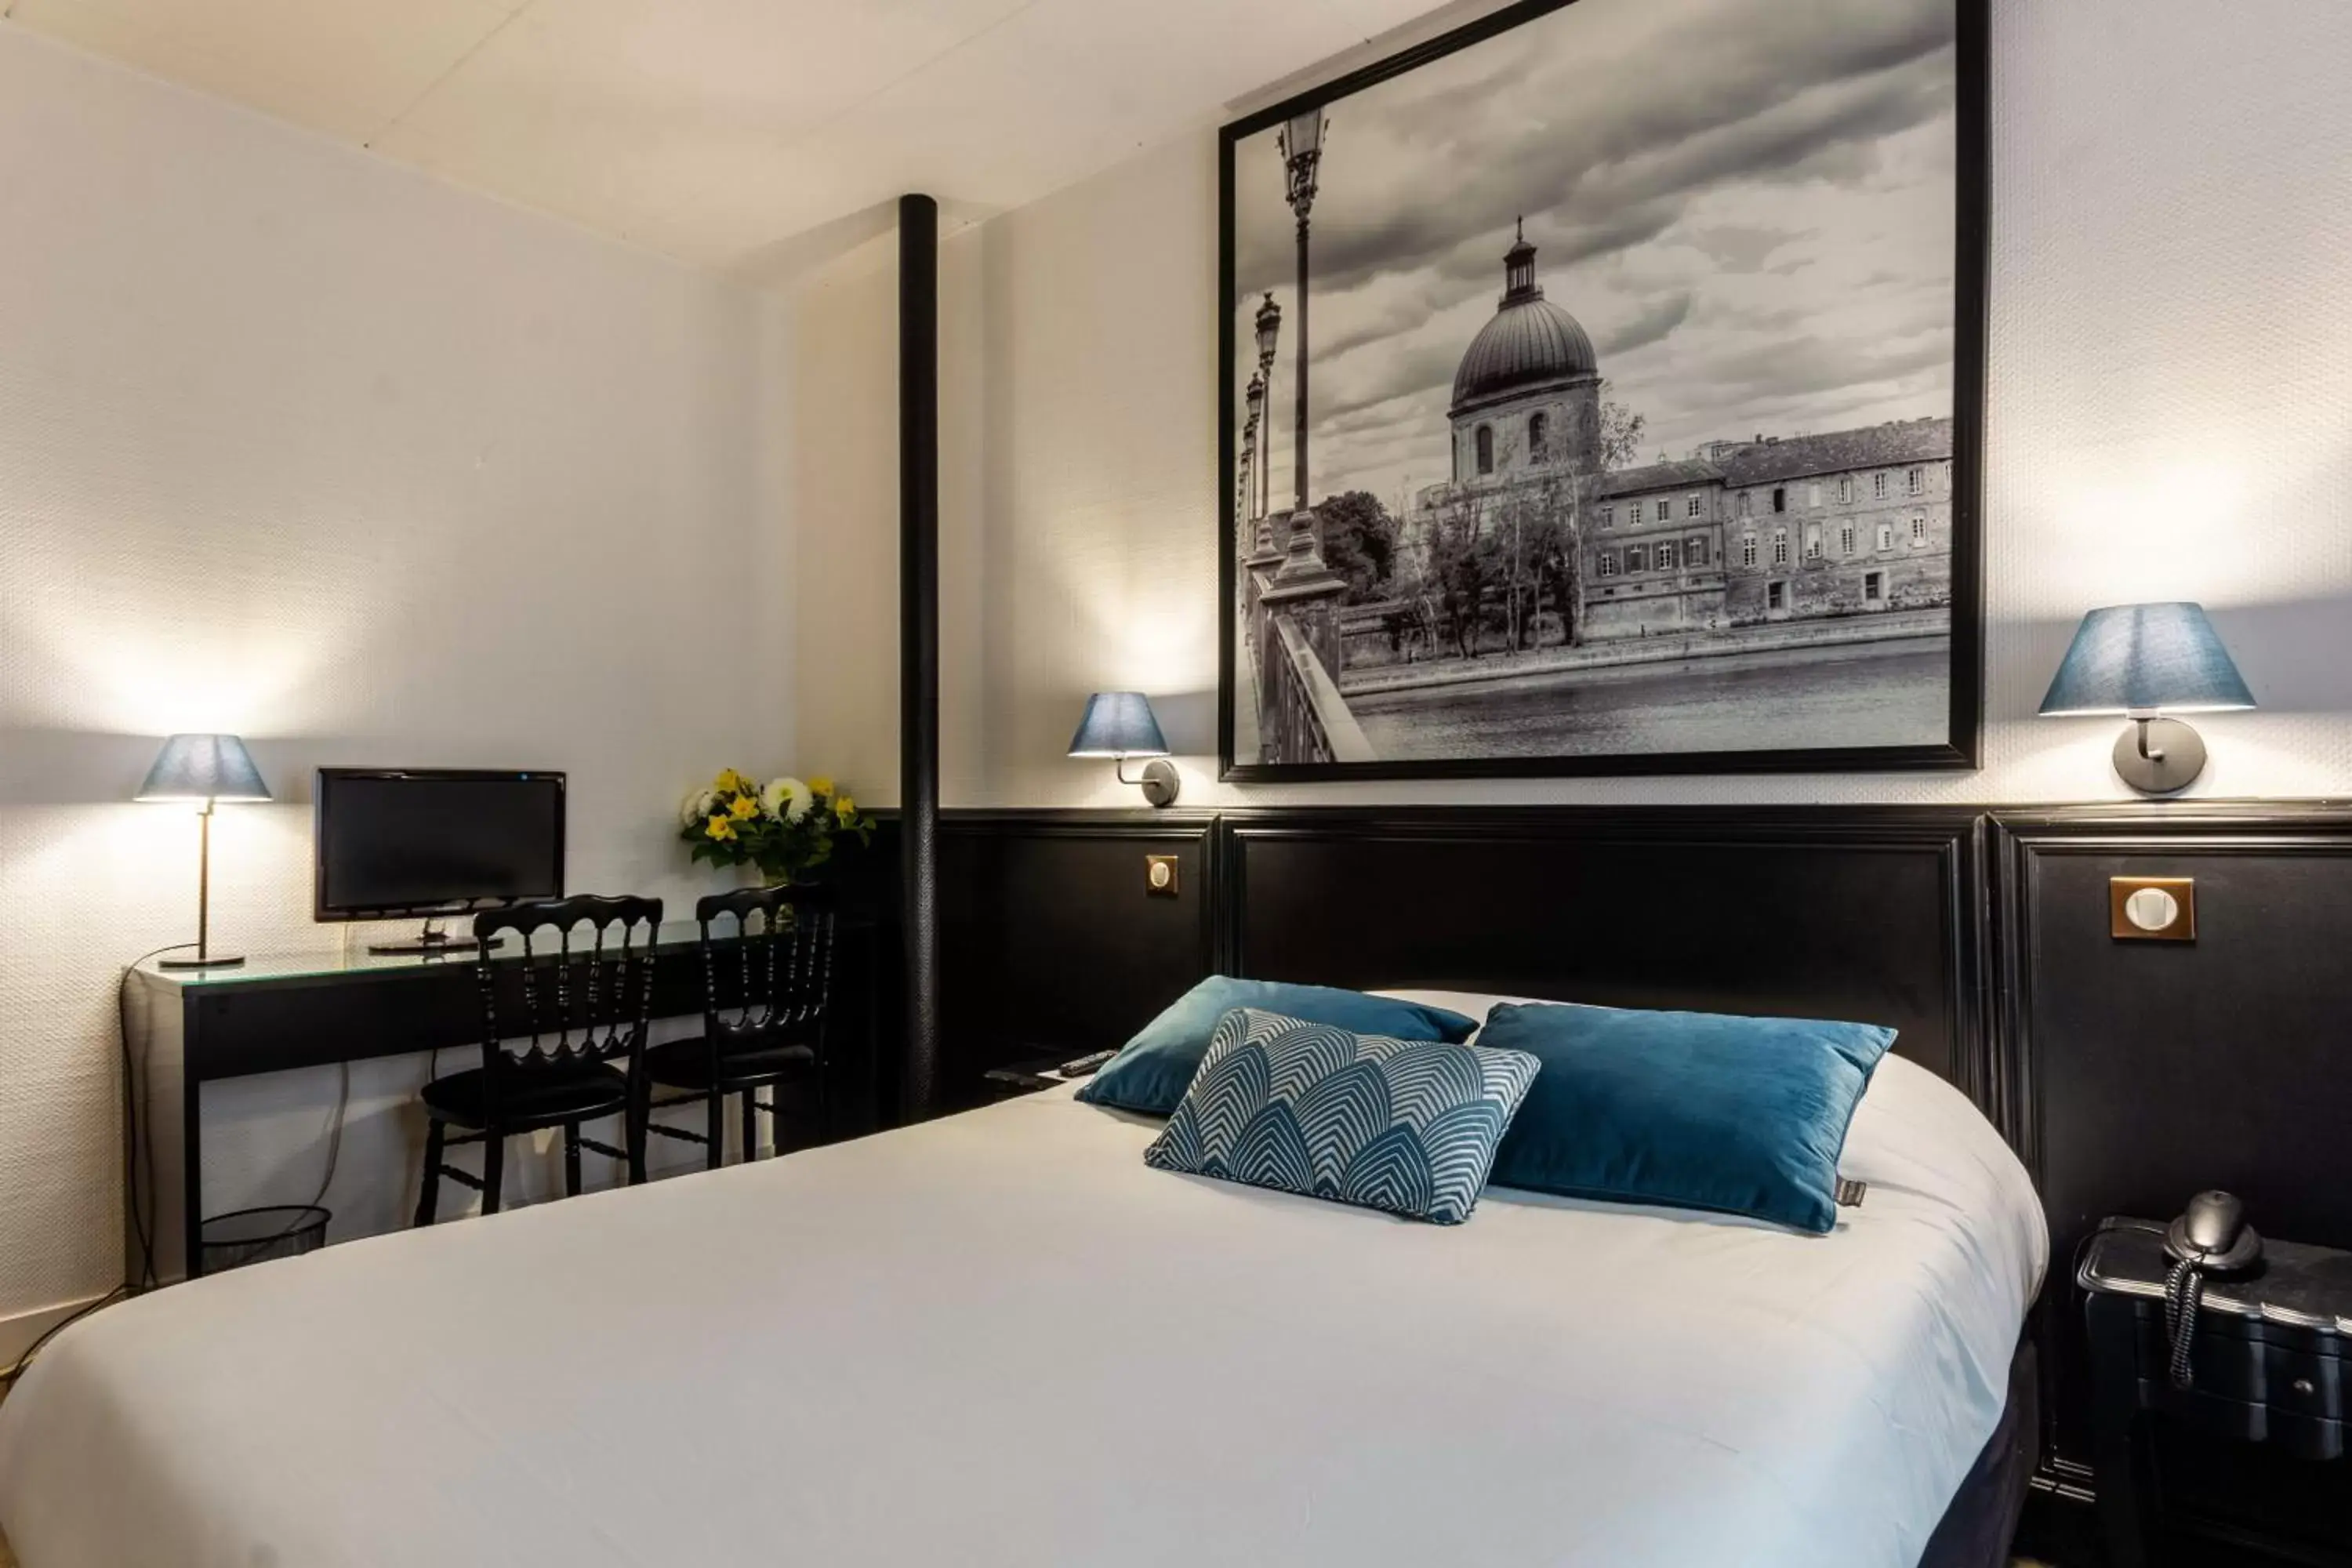 Bed in Hôtel de France